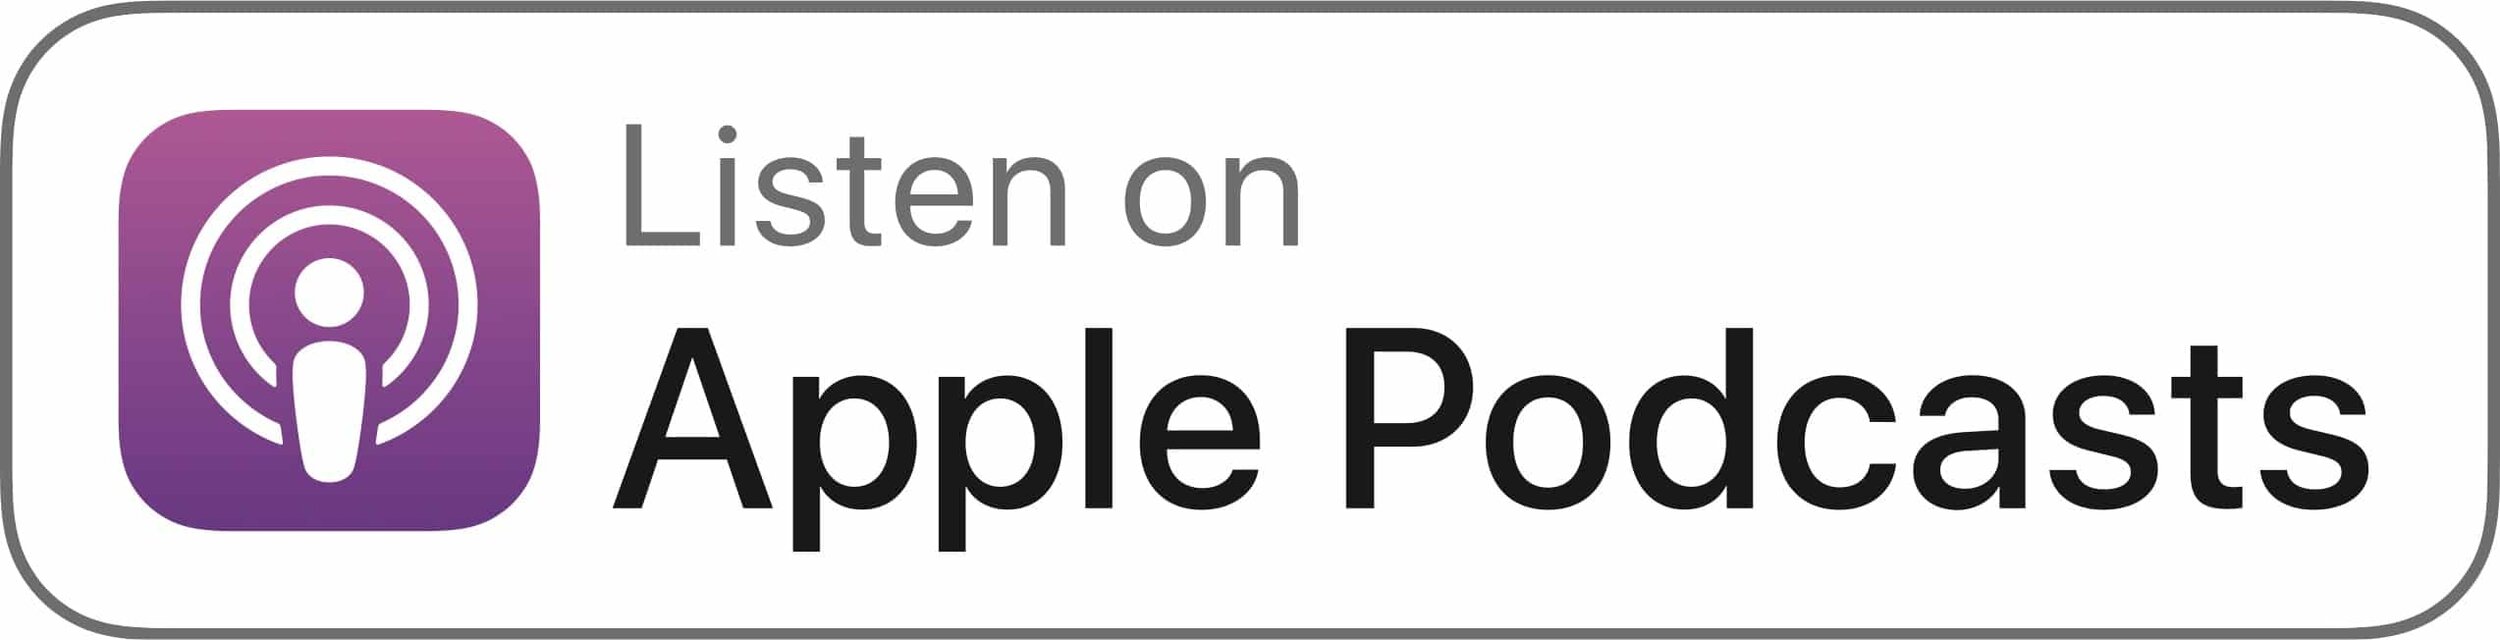 Apple_Podcasts_Listen_Badge_white.jpg